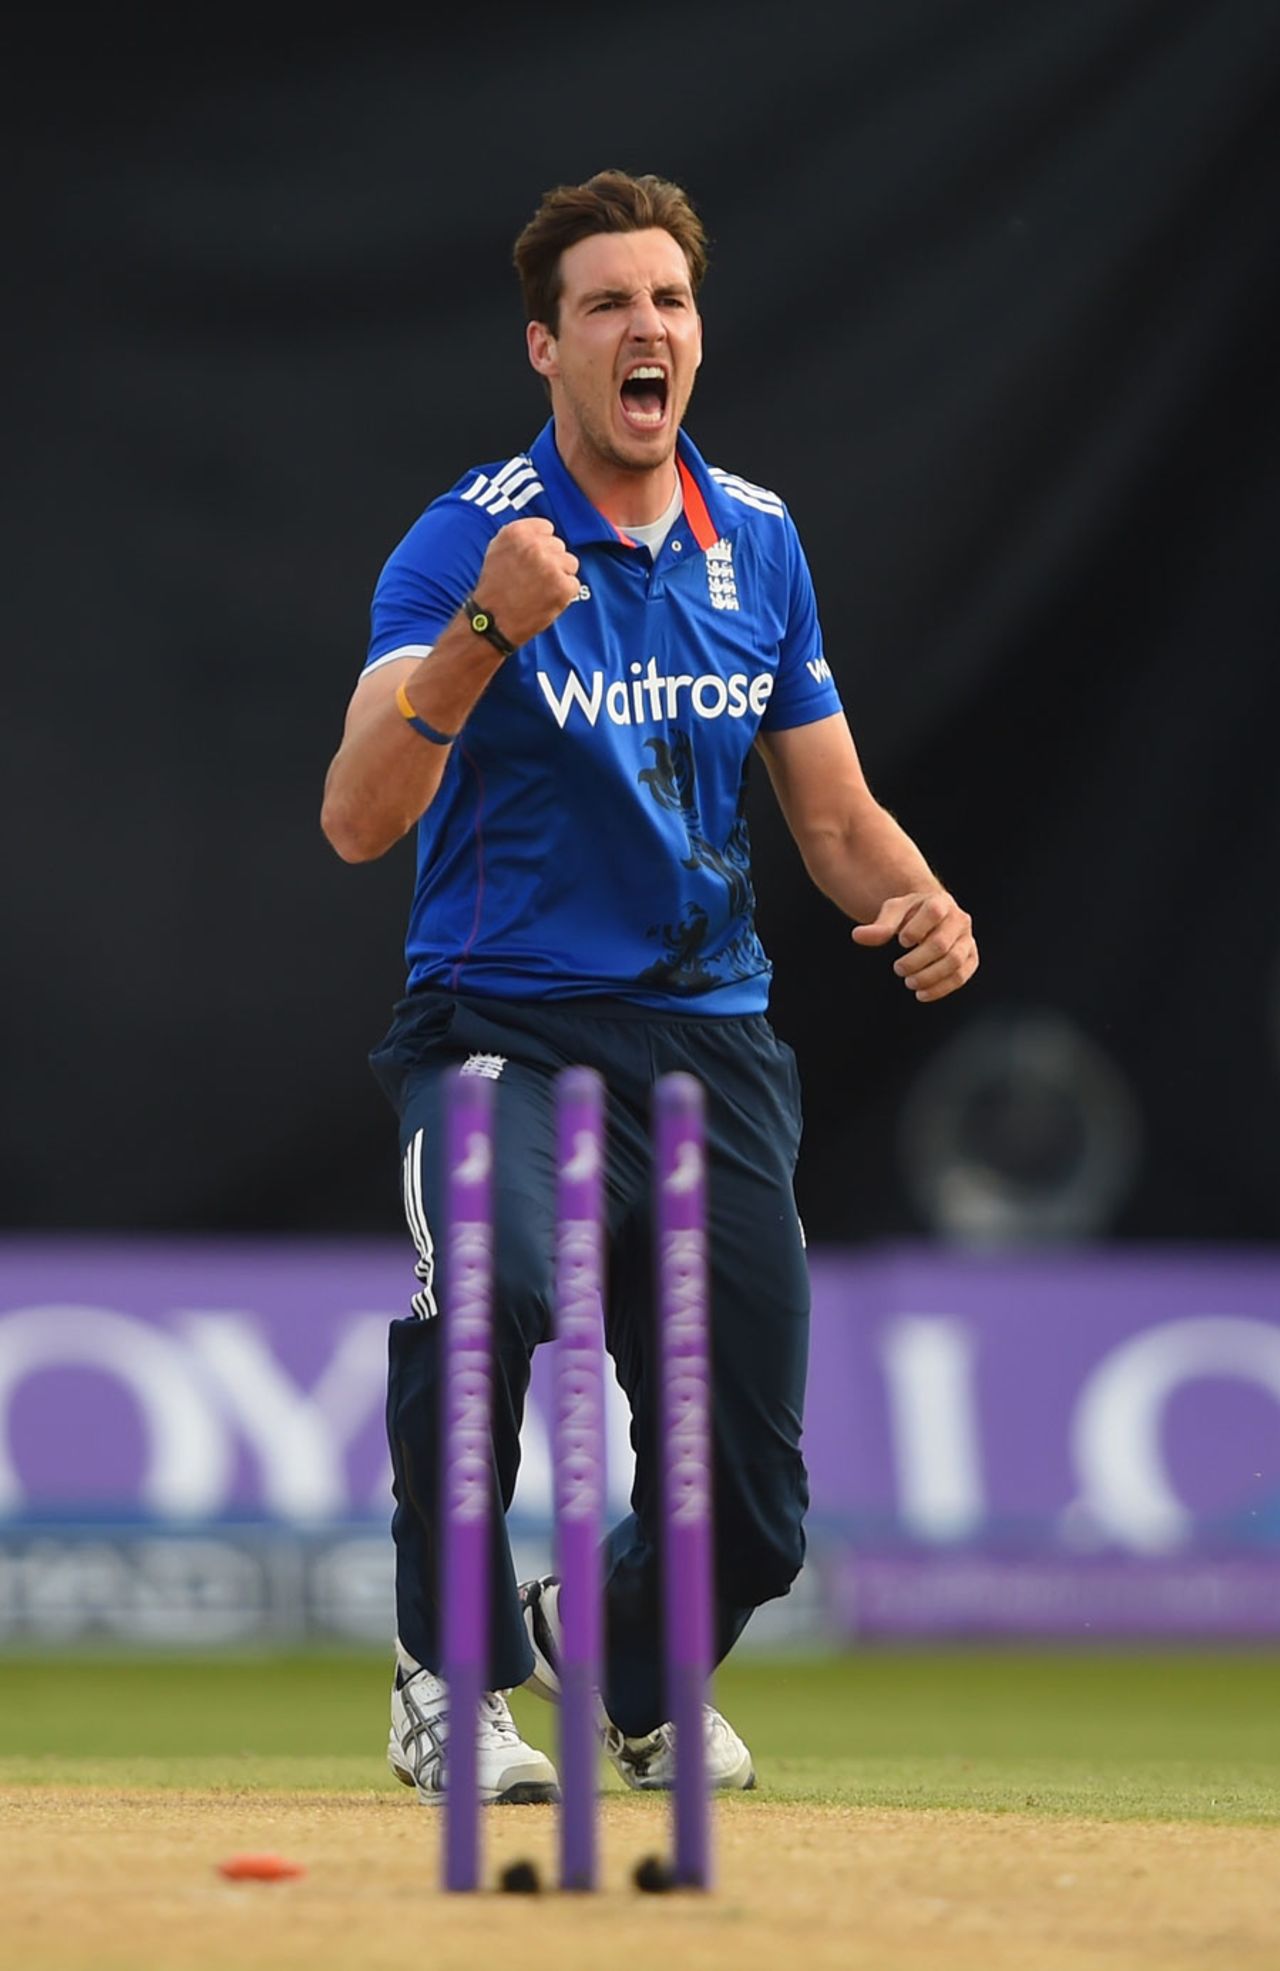 Steven Finn struck in his opening over, England v New Zealand, 1st ODI, Edgbaston, June 9, 2015